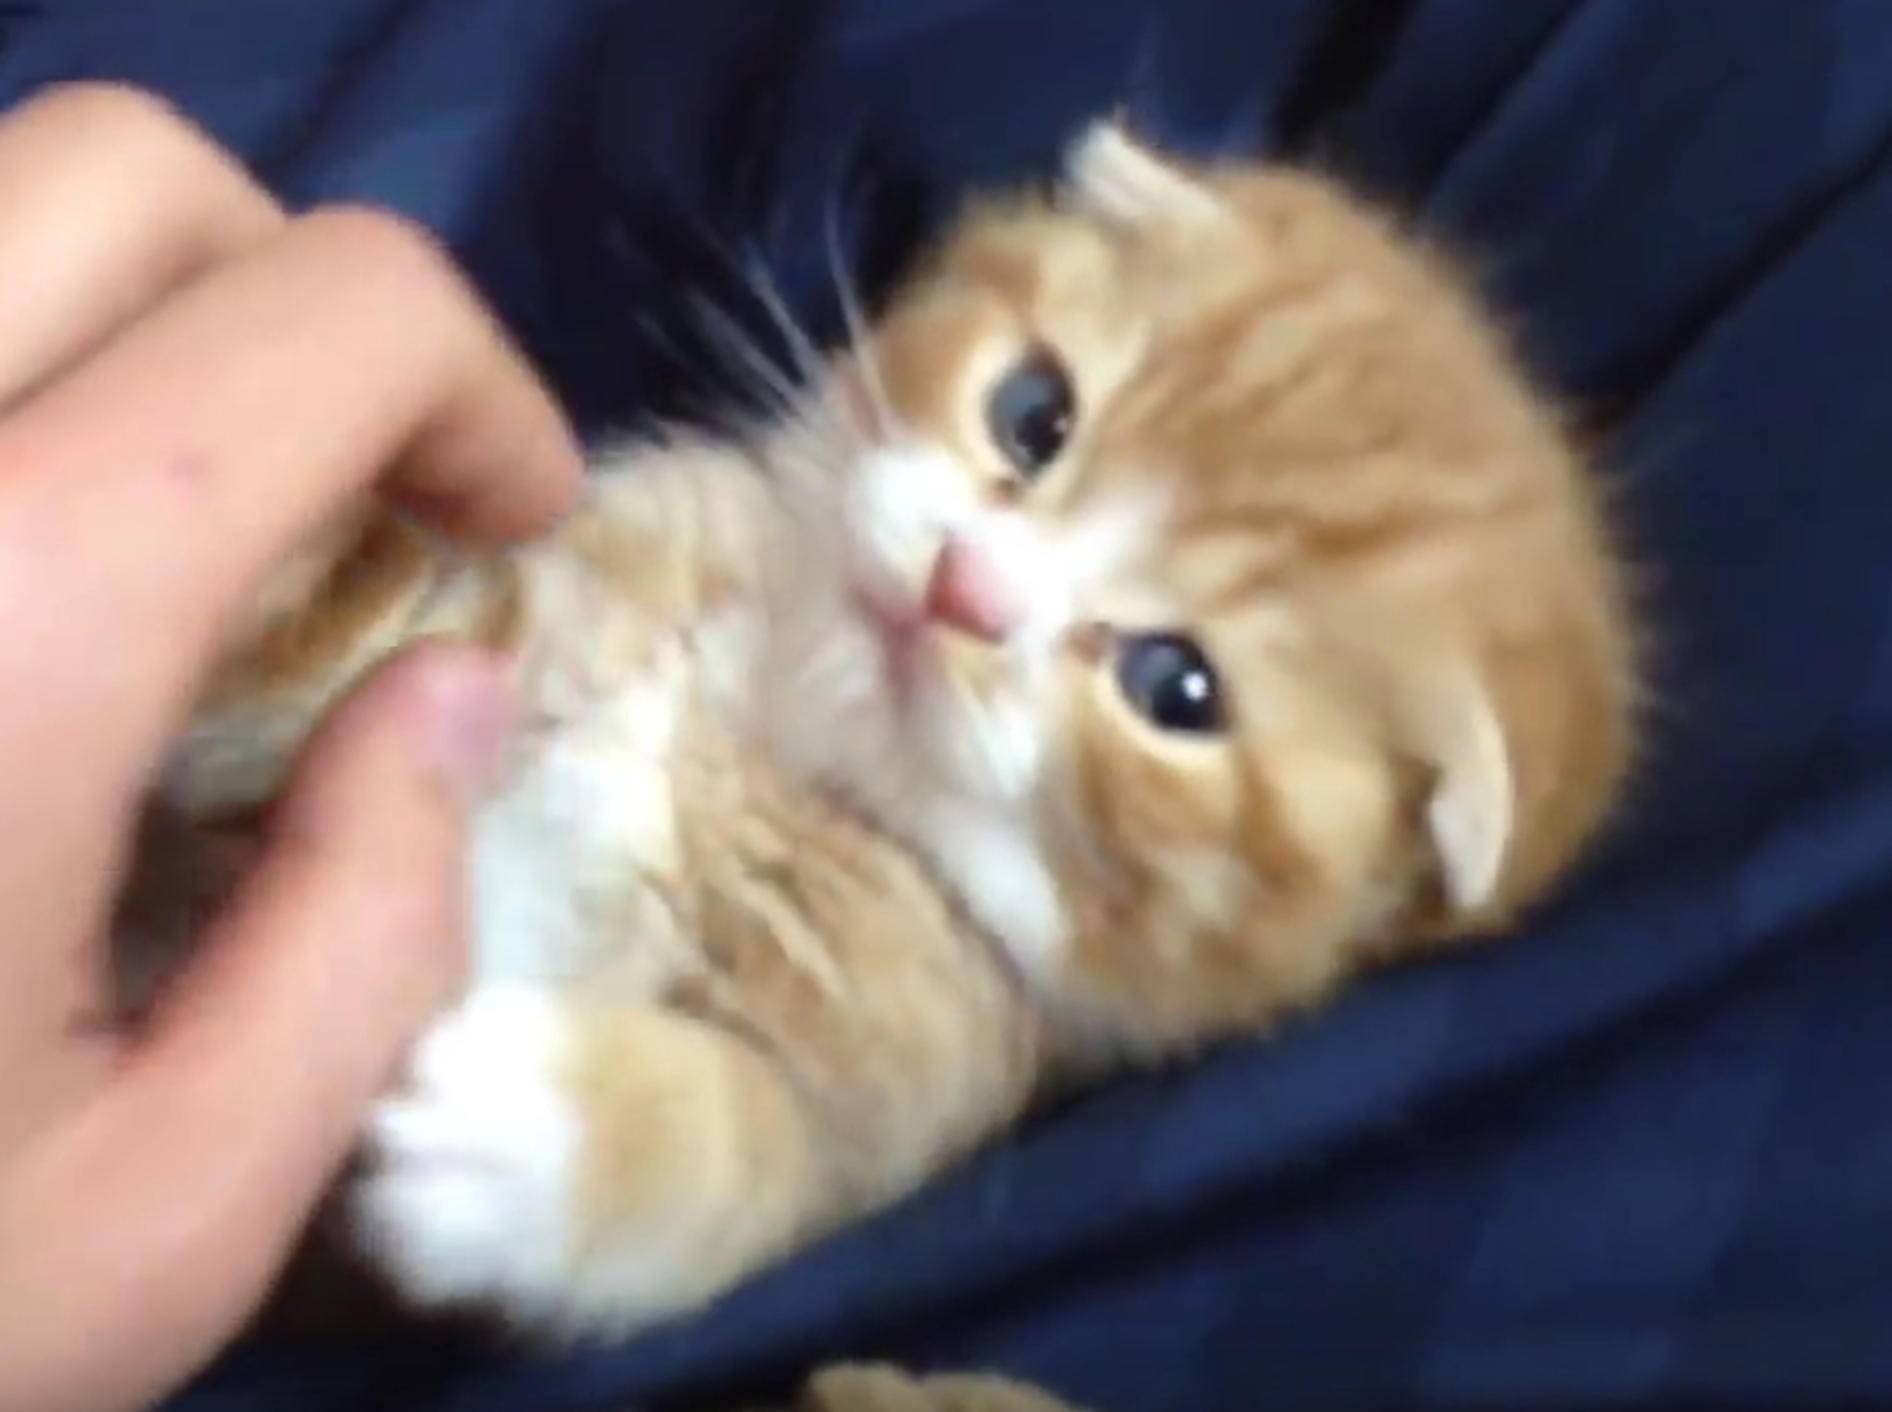 Rotes flauschiges Kätzchen genießt Streicheleinheiten – Bild: YouTube / ssgtkei